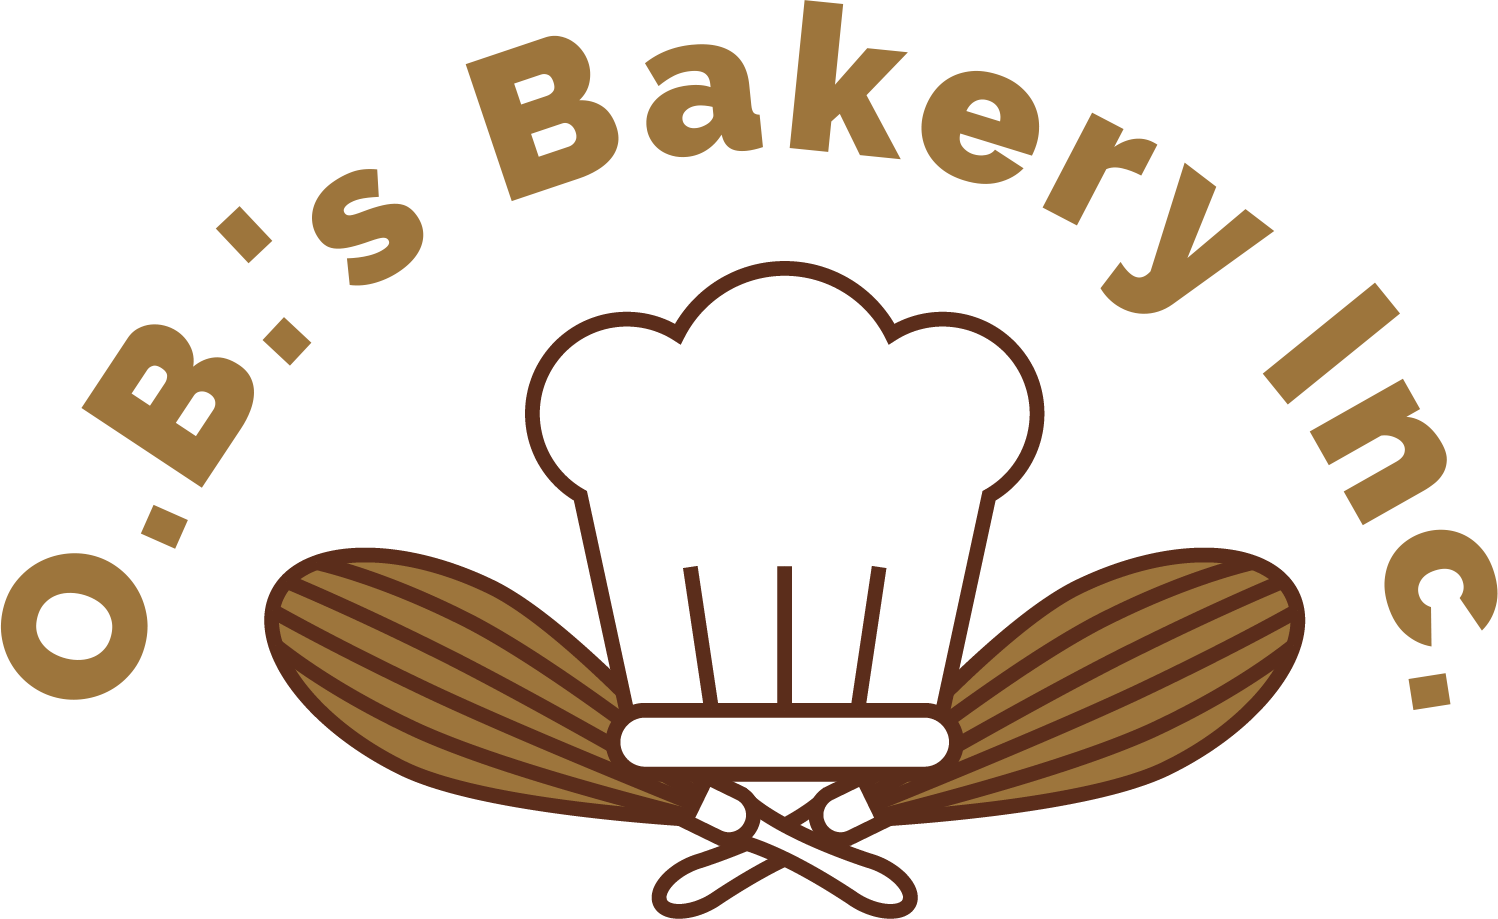 O.B.'s Bakery Inc.